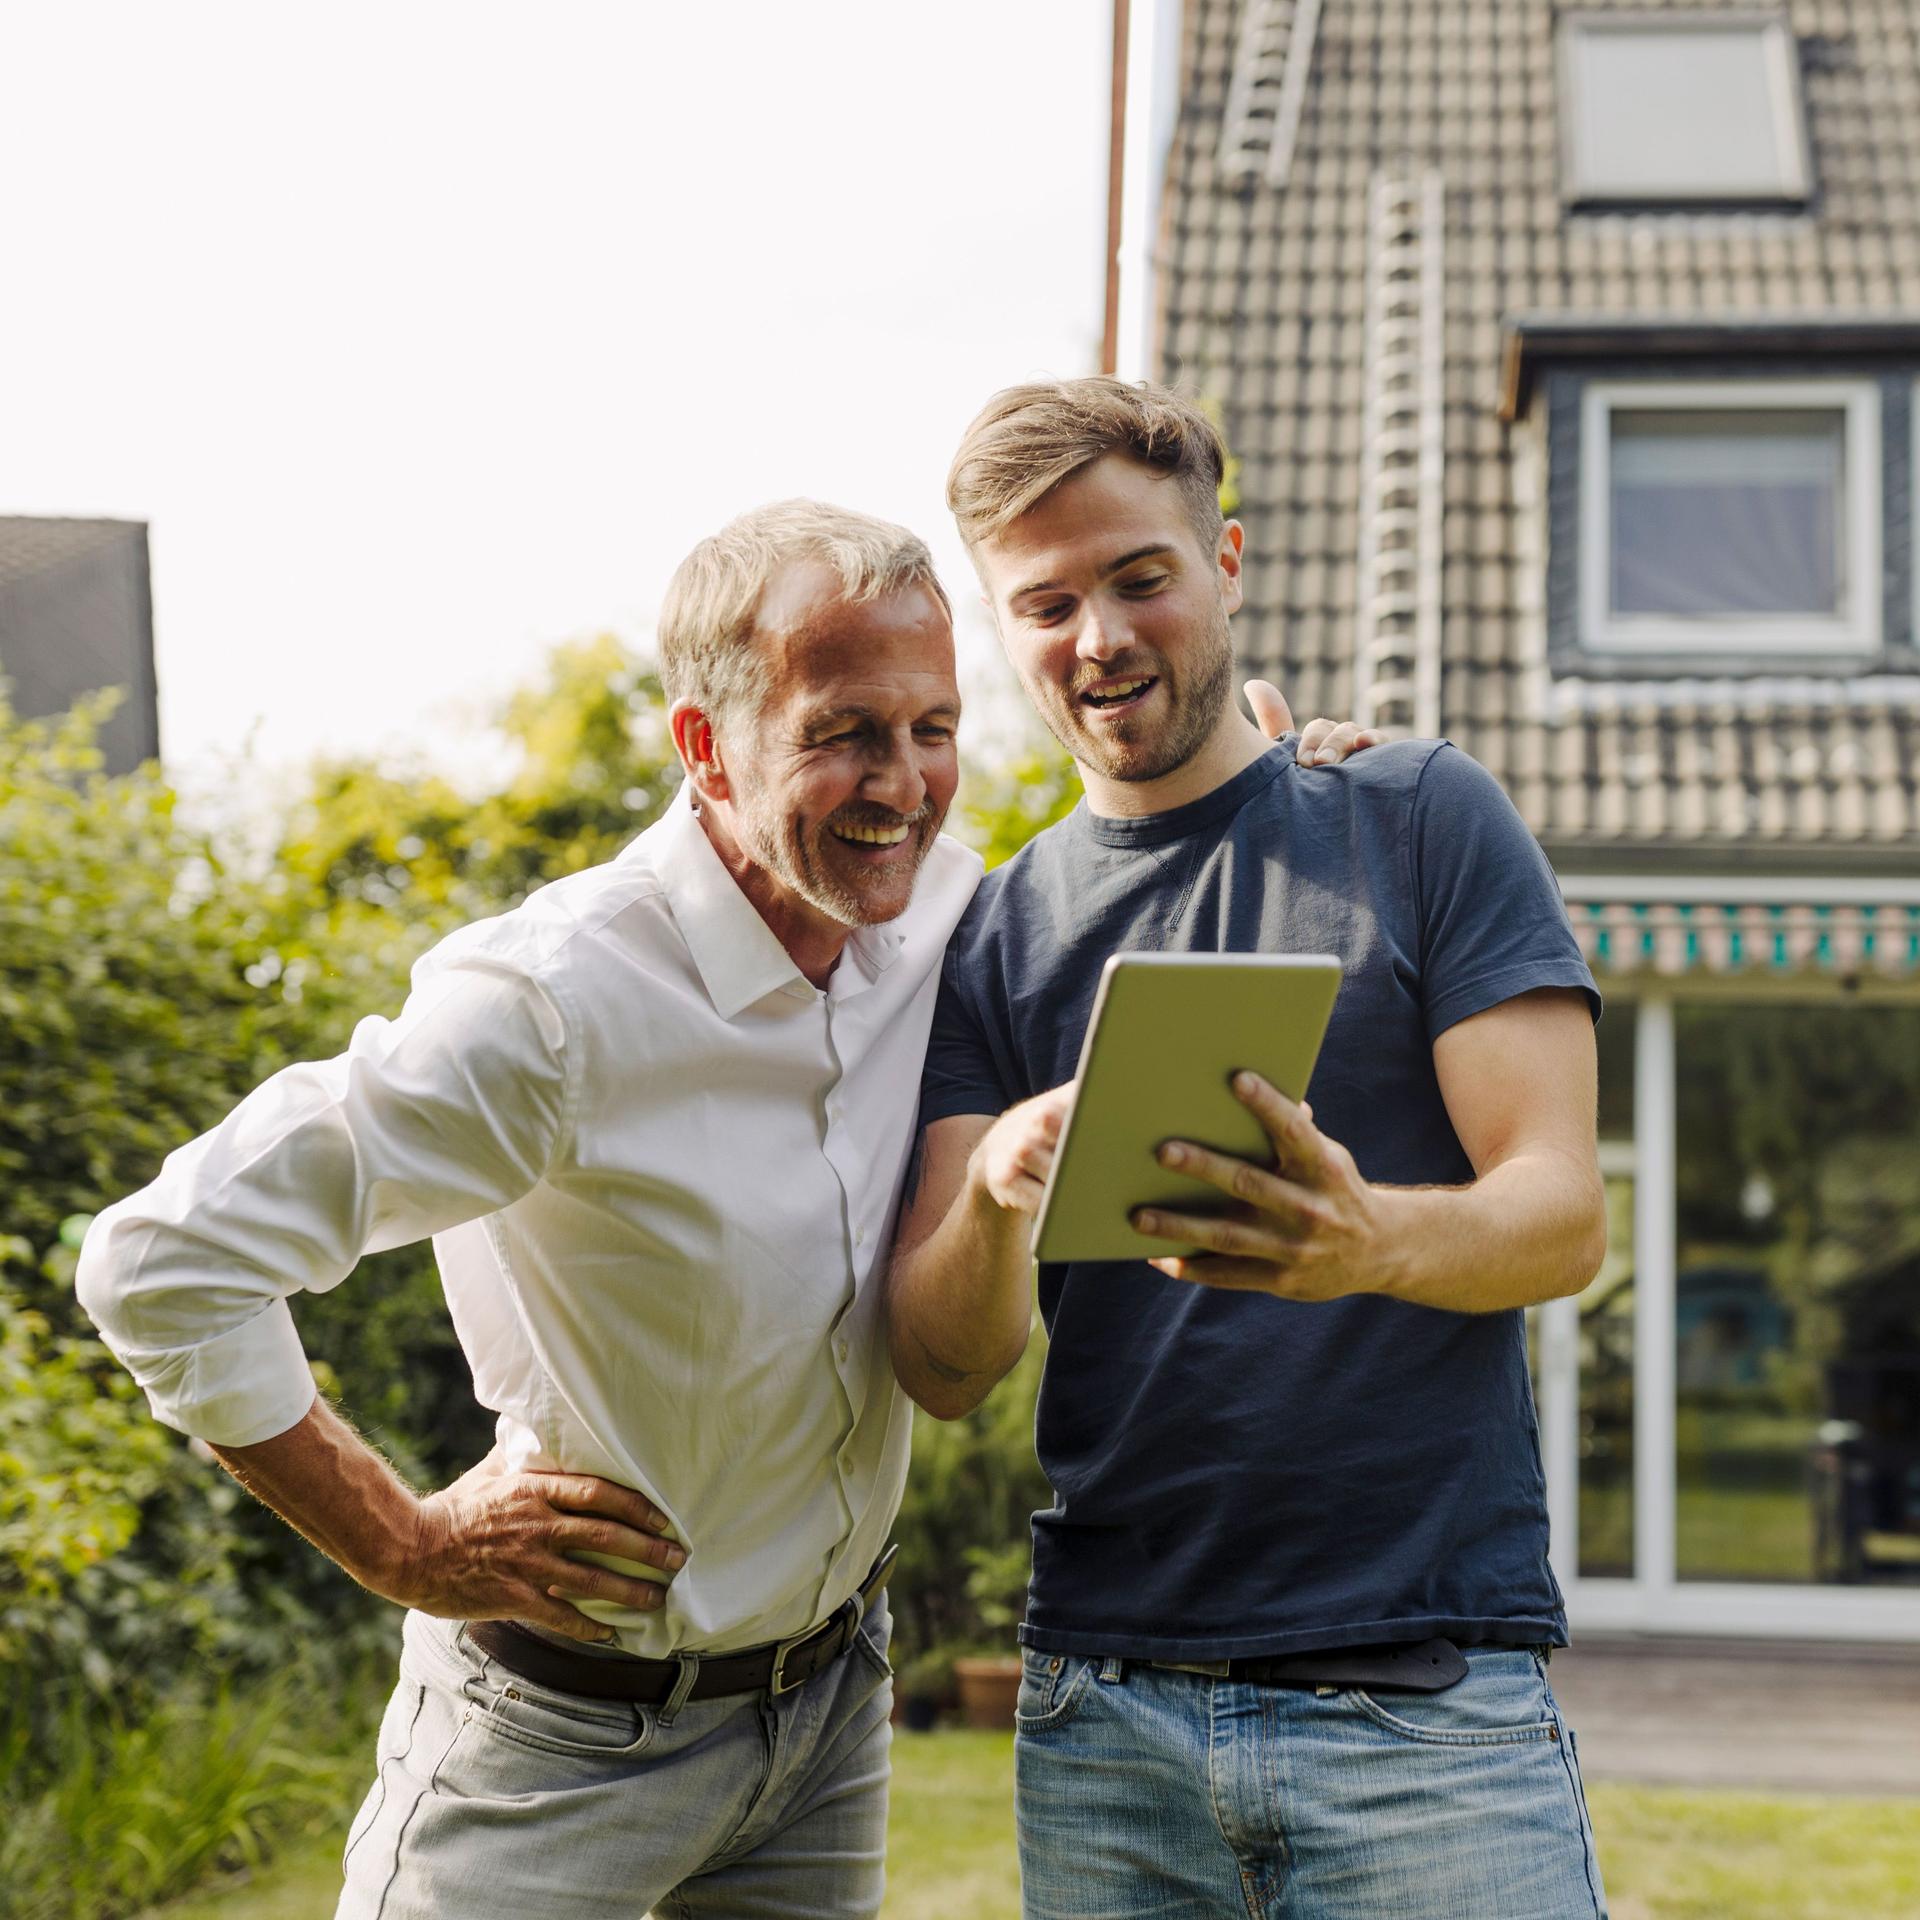 Zwei Männer stehen im Garten mit einem Tablet in der Hand. Sie schauen auf das Tablet. Im Hintergrund ist ein Einfamilienhaus zu sehen.